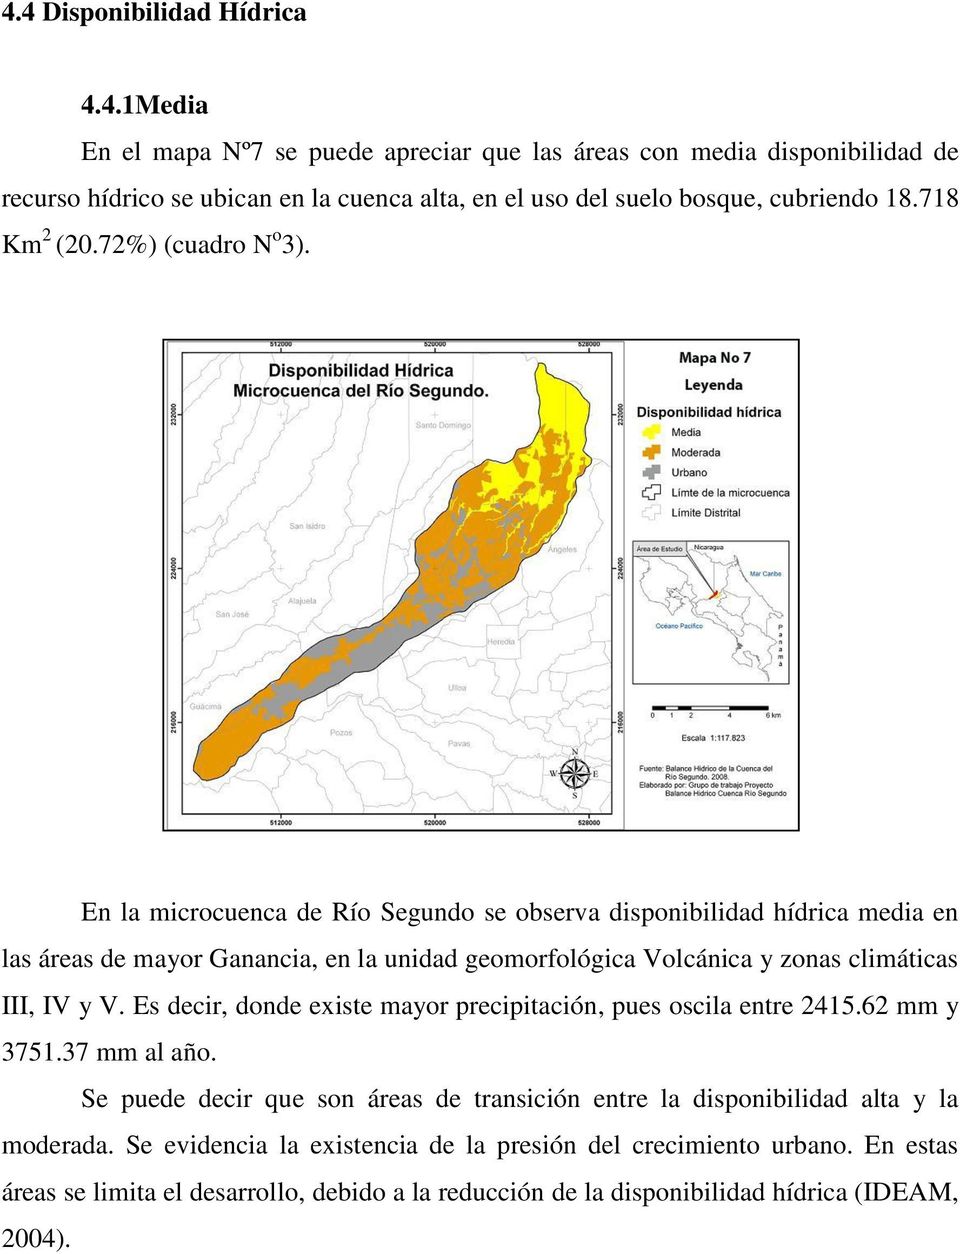 En la microcuenca de Río Segundo se observa disponibilidad hídrica media en las áreas de mayor Ganancia, en la unidad geomorfológica Volcánica y zonas climáticas III, IV y V.